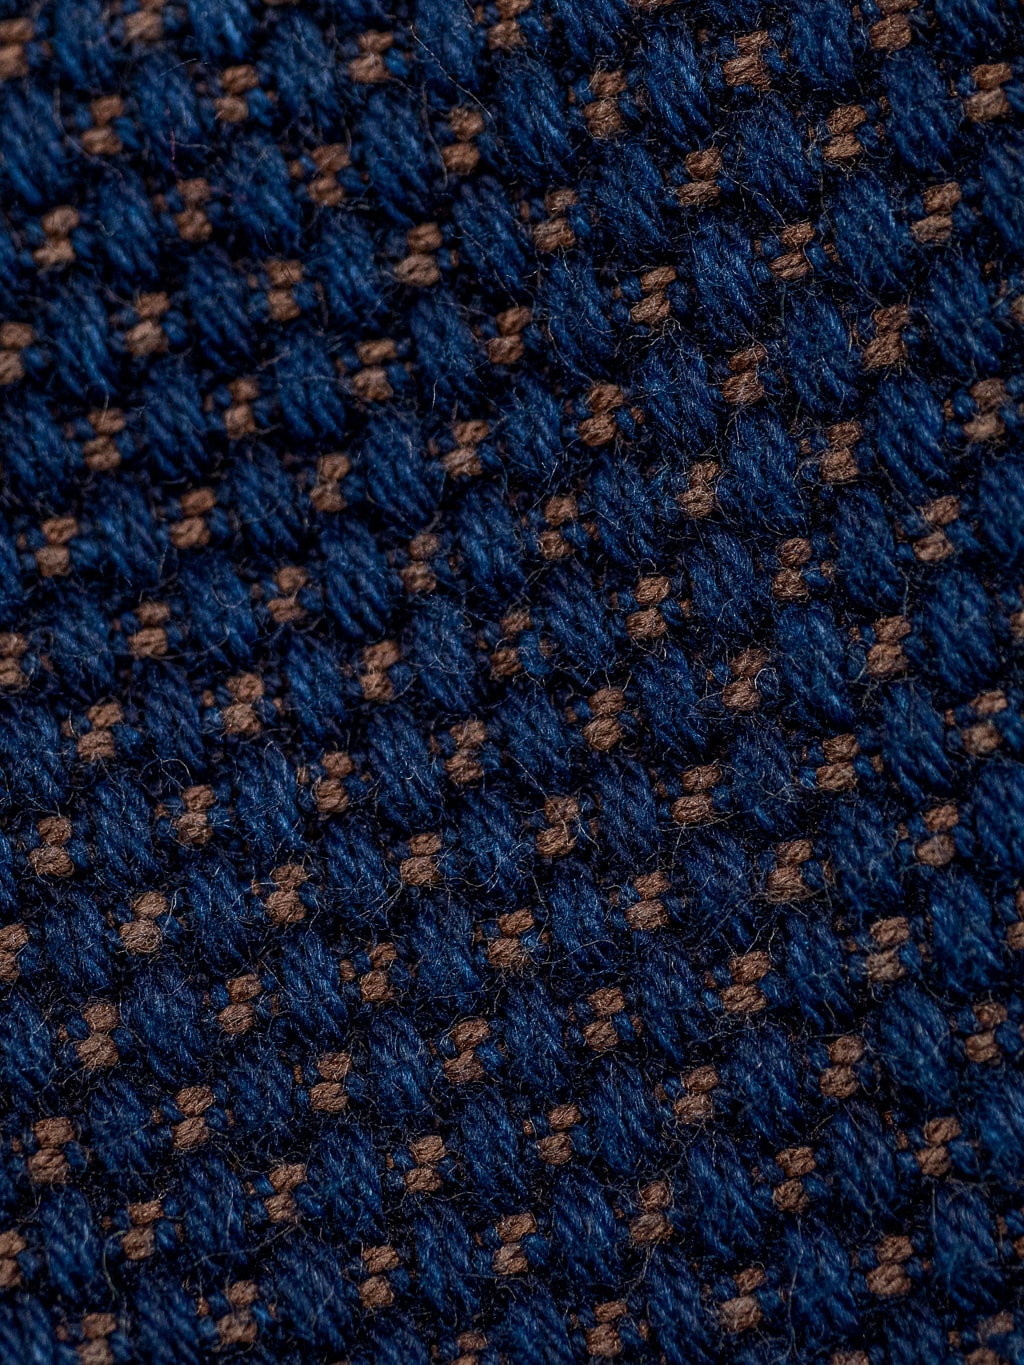 Studio Dartisan indigo kakishibu sashiko selvedge jacket fabric closeup